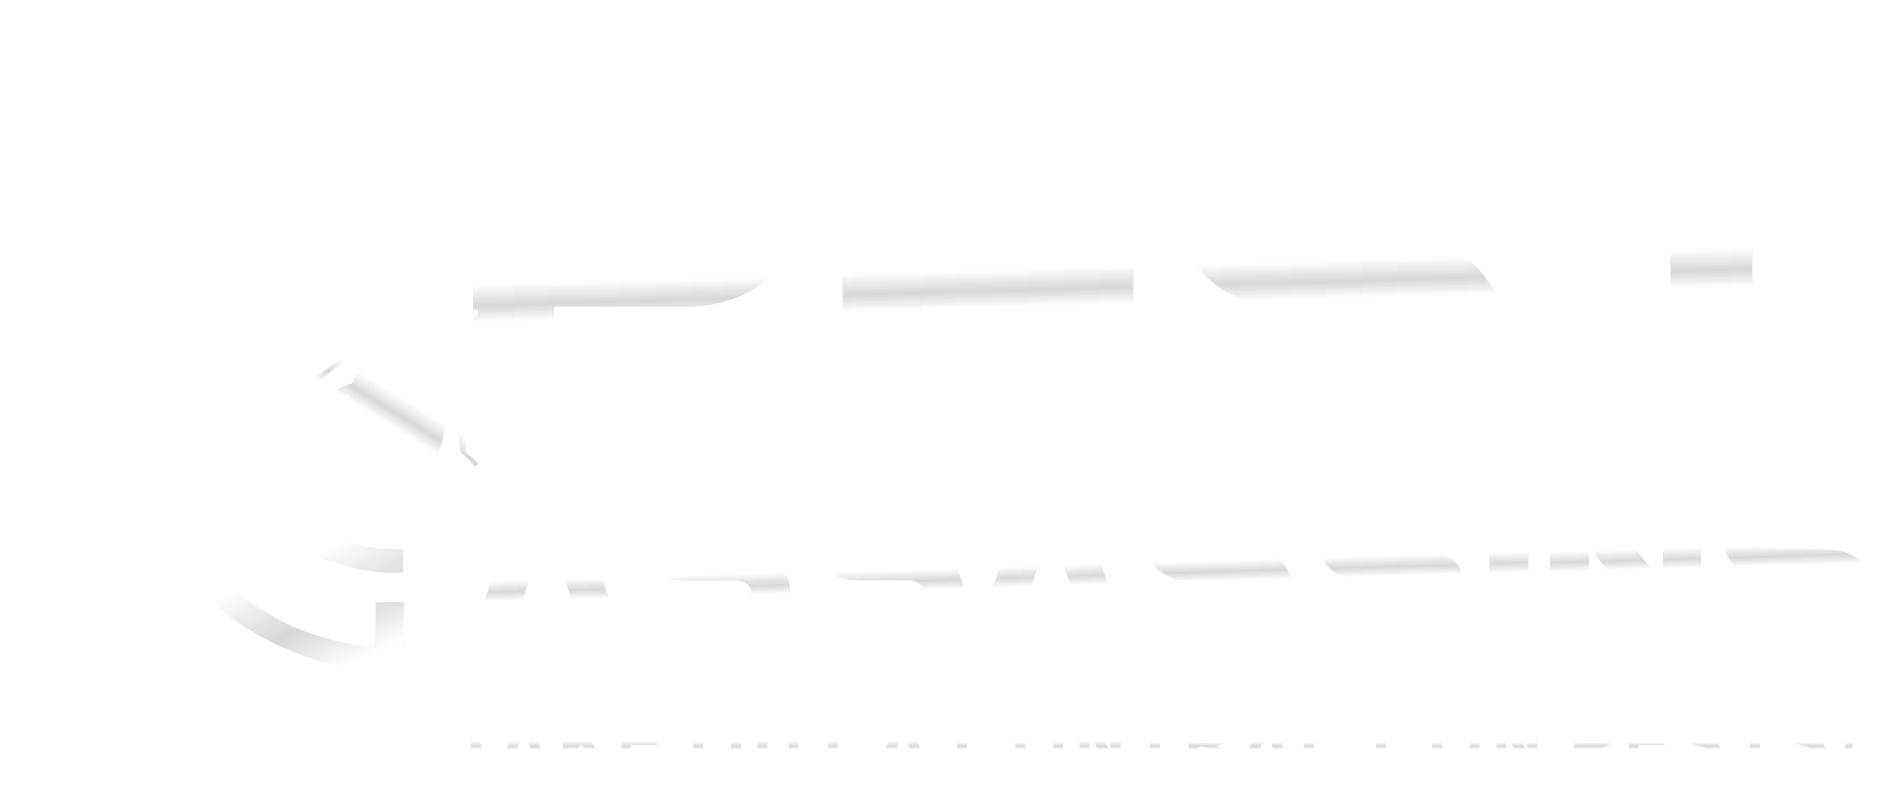 Pest Assassins Massachusetts and Rhode Island logo.